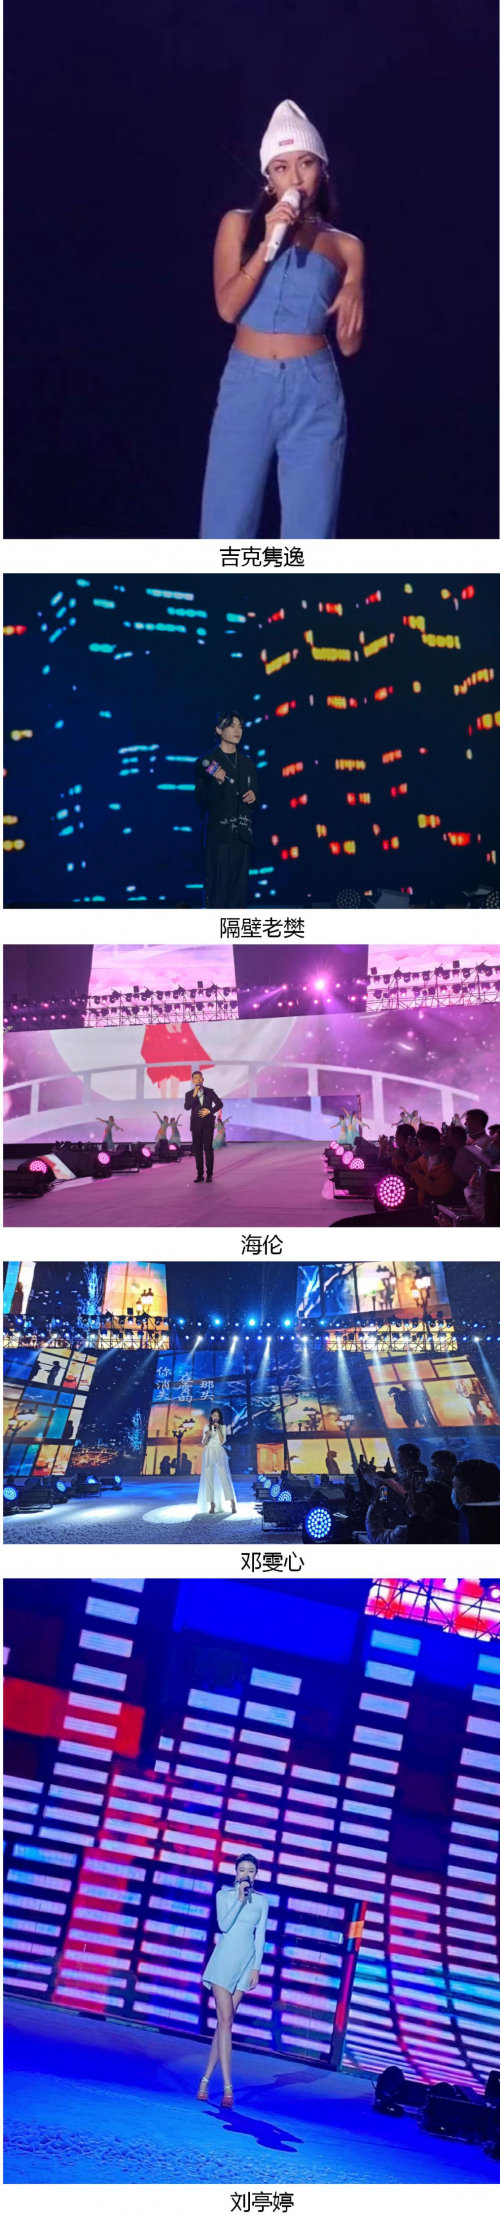 FAN严选&JLV海心沙巨星之夜嗨翻全城 打造2020广州巅峰之夜第3张图片